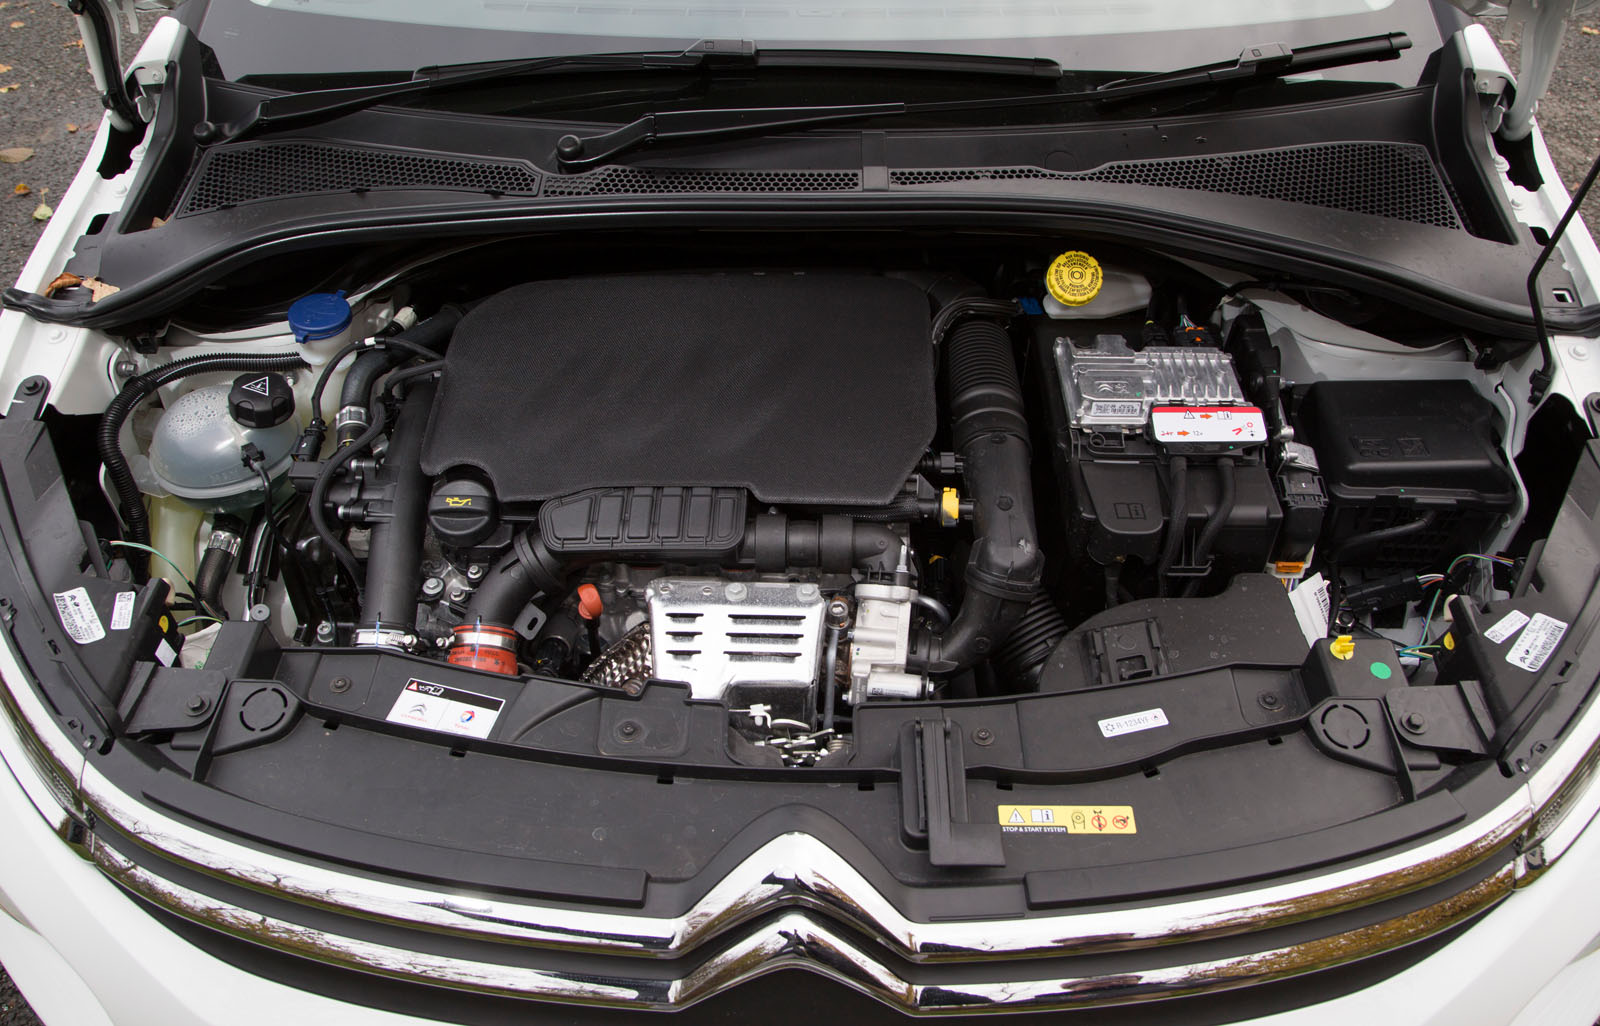 1.2-litre Citroën C3 Puretech engine